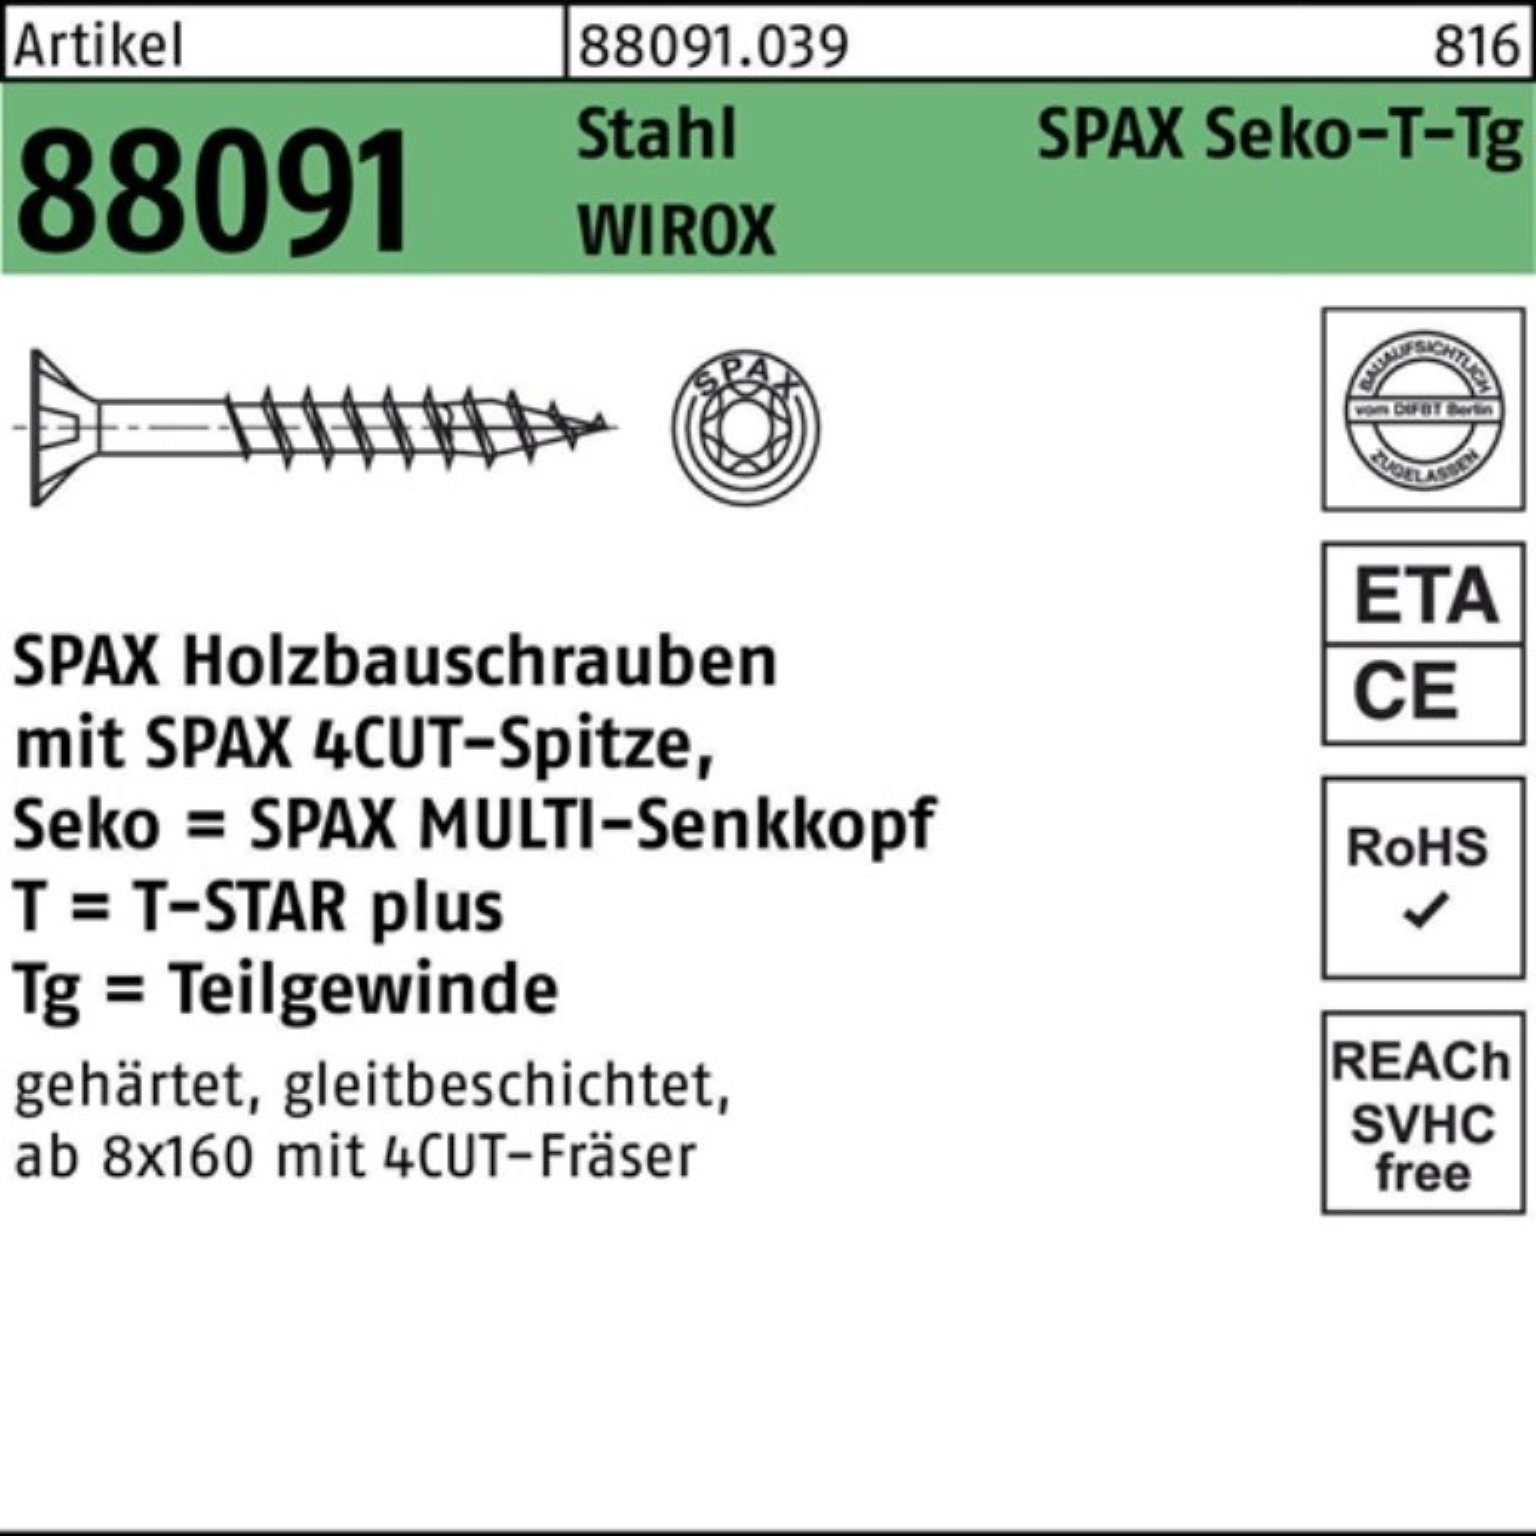 SPAX Schraube 100er Pack Schraube R 88091 SEKO/T-STAR TG 10x 320/80-T50 Stahl WIROX